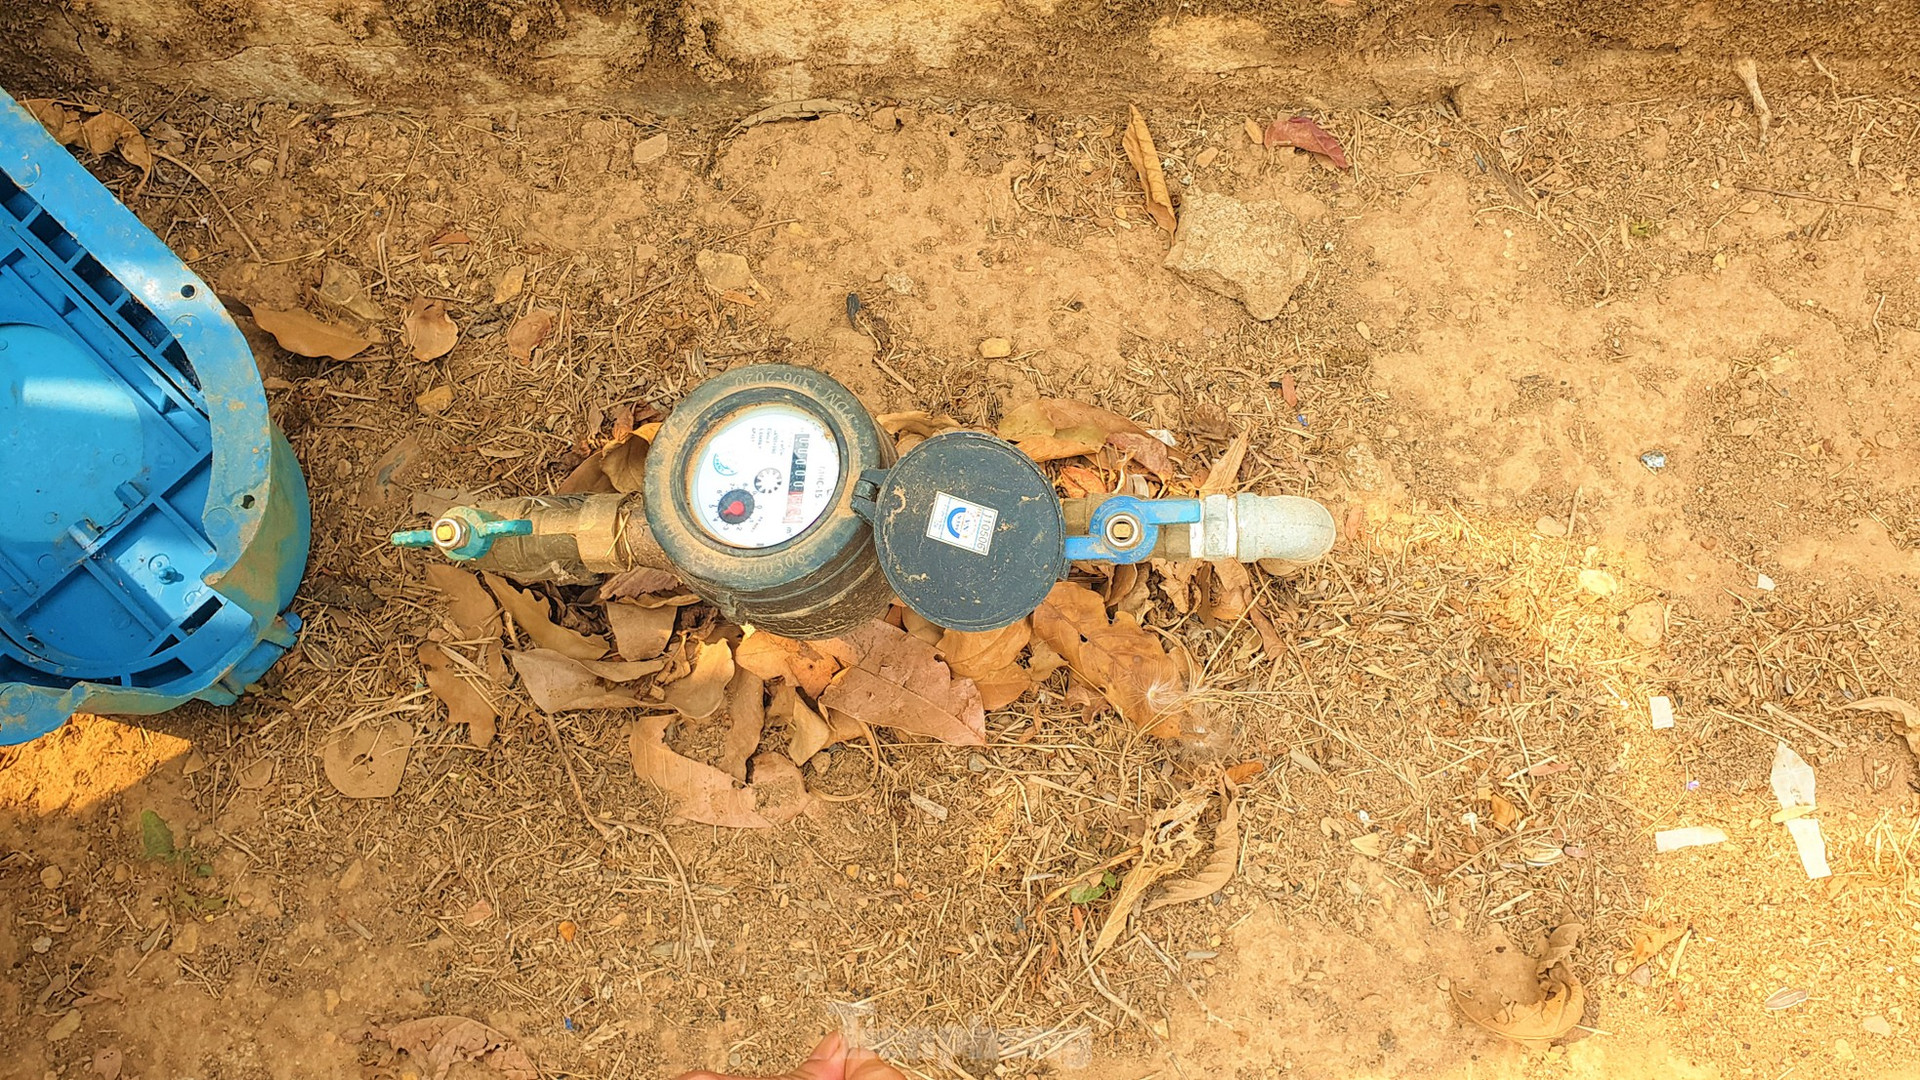 Nhà máy nước hiện đại nhất Đắk Lắk để không, người dân vẫn phải dùng nước hồ, nước mưa ảnh 2